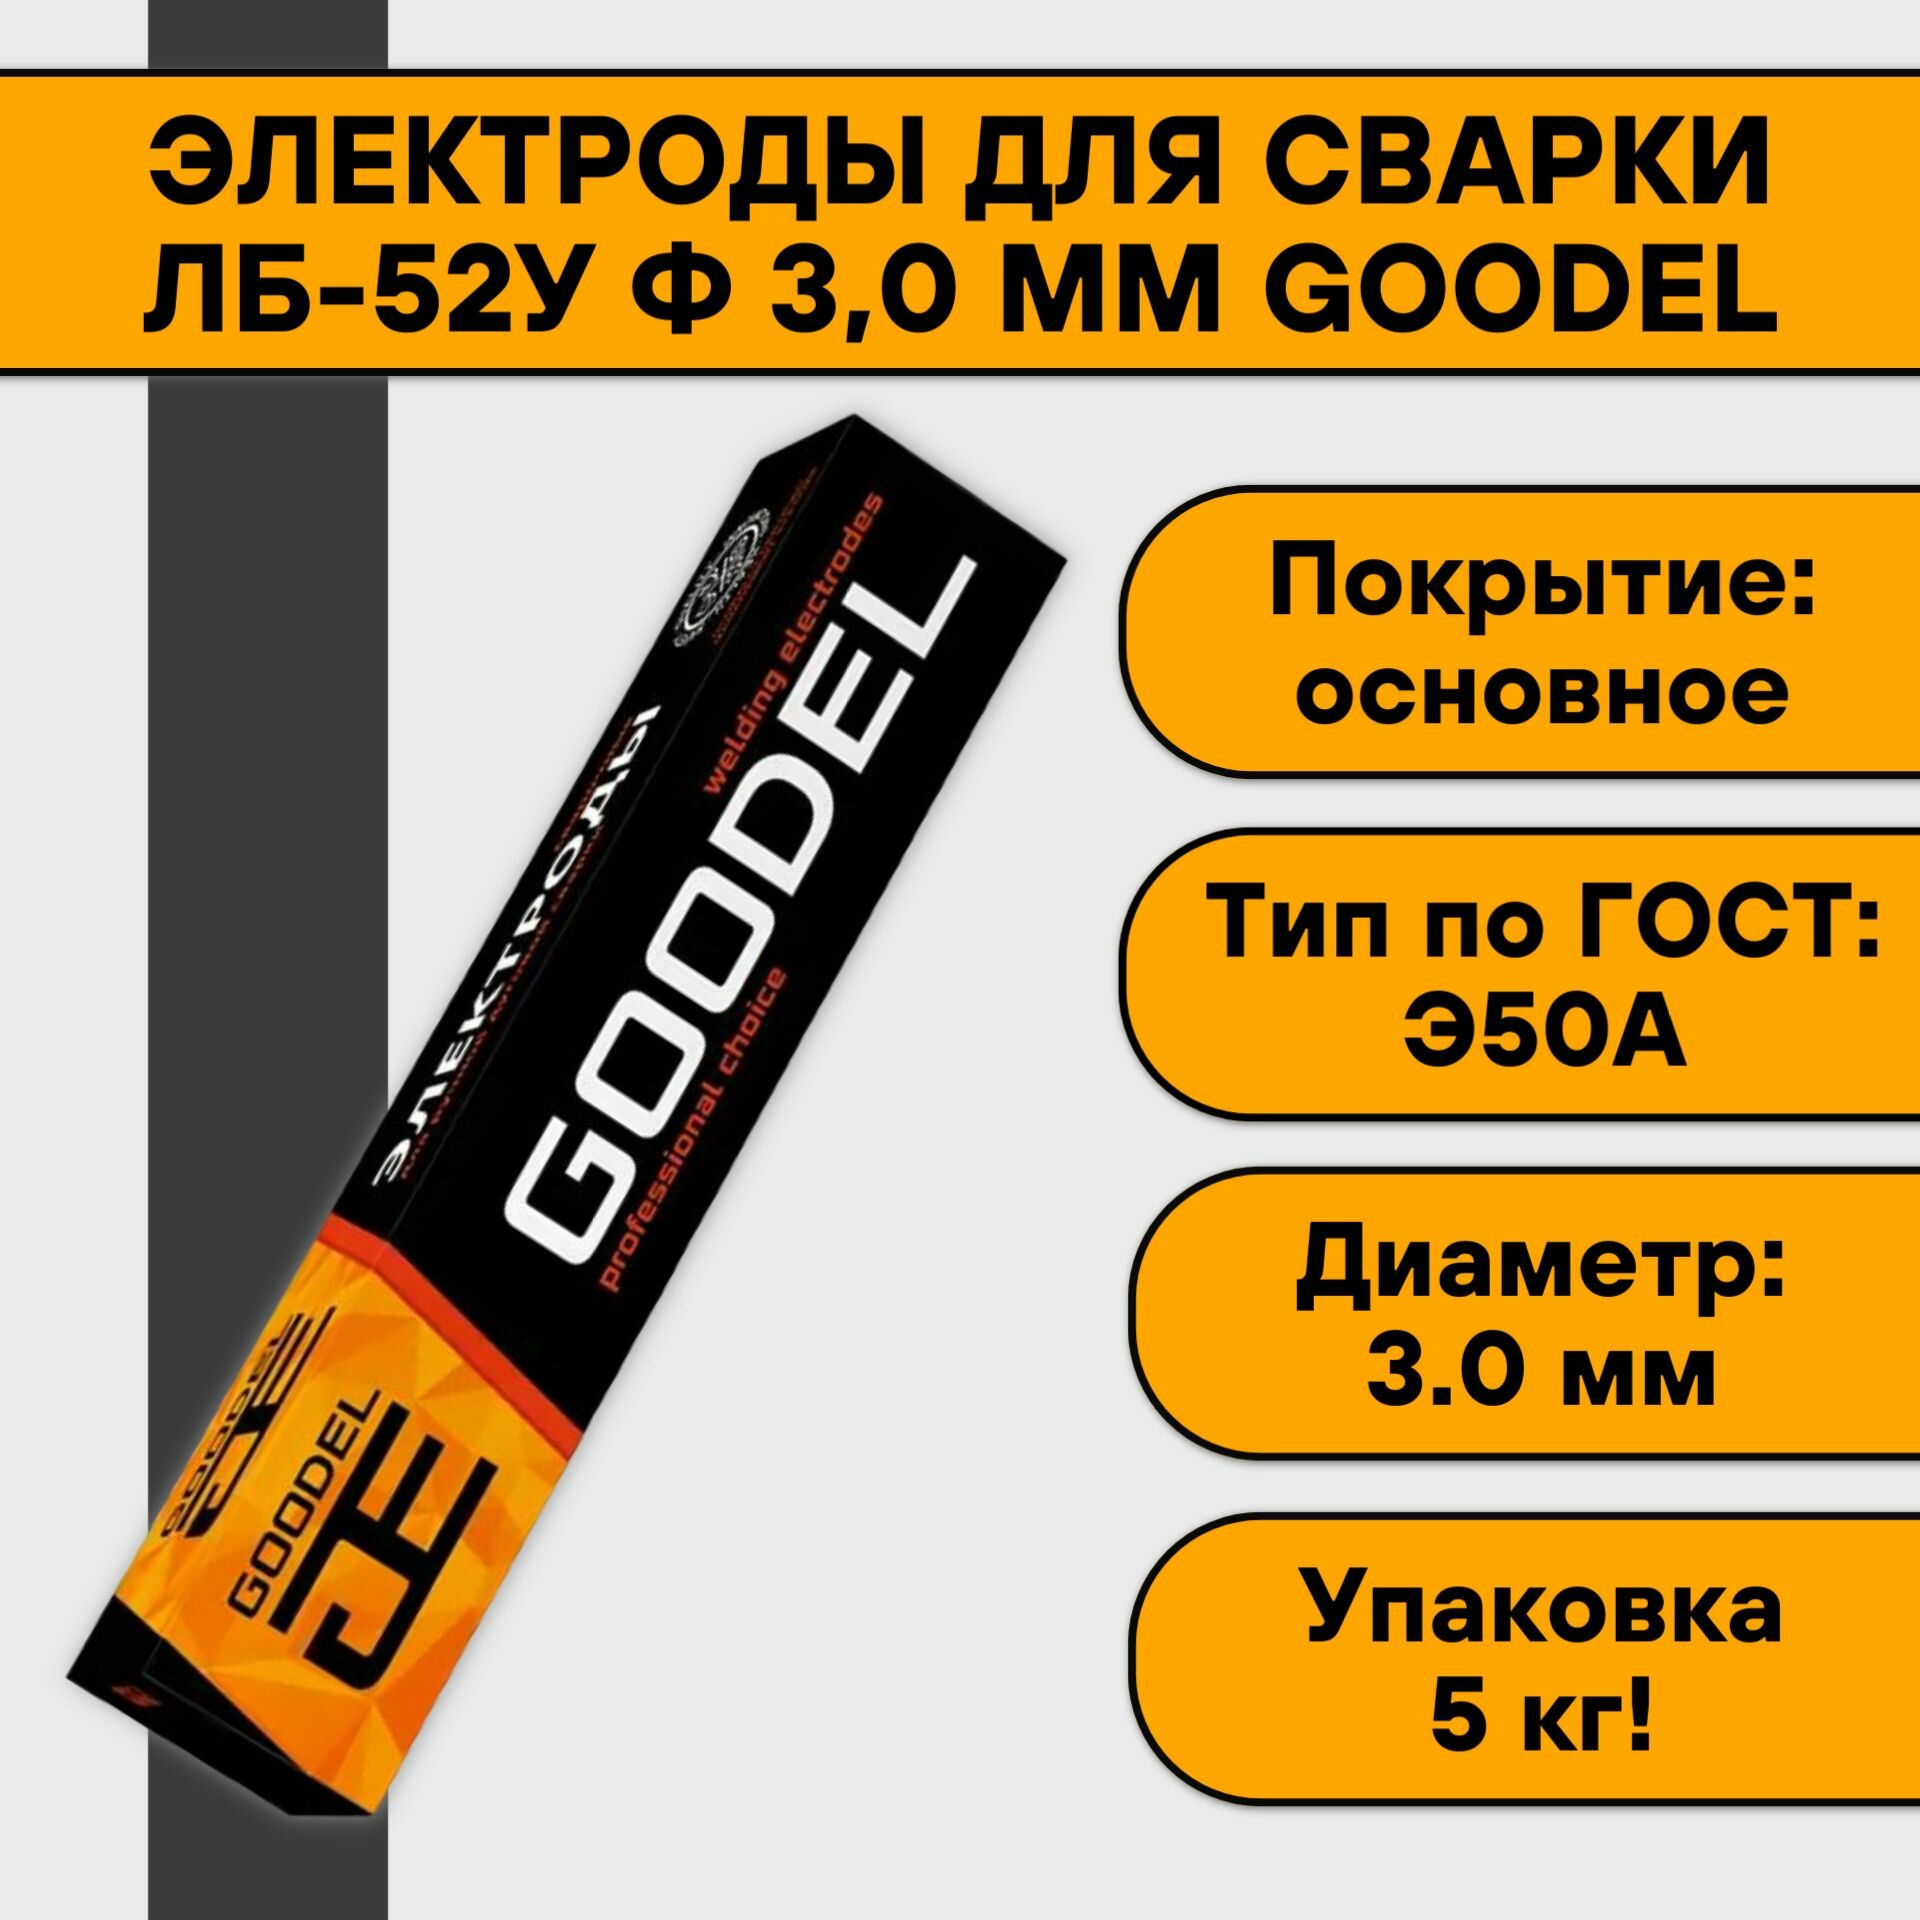 Электроды для сварки ЛБ-52У ф 3,0 мм Goodel (5 кг)